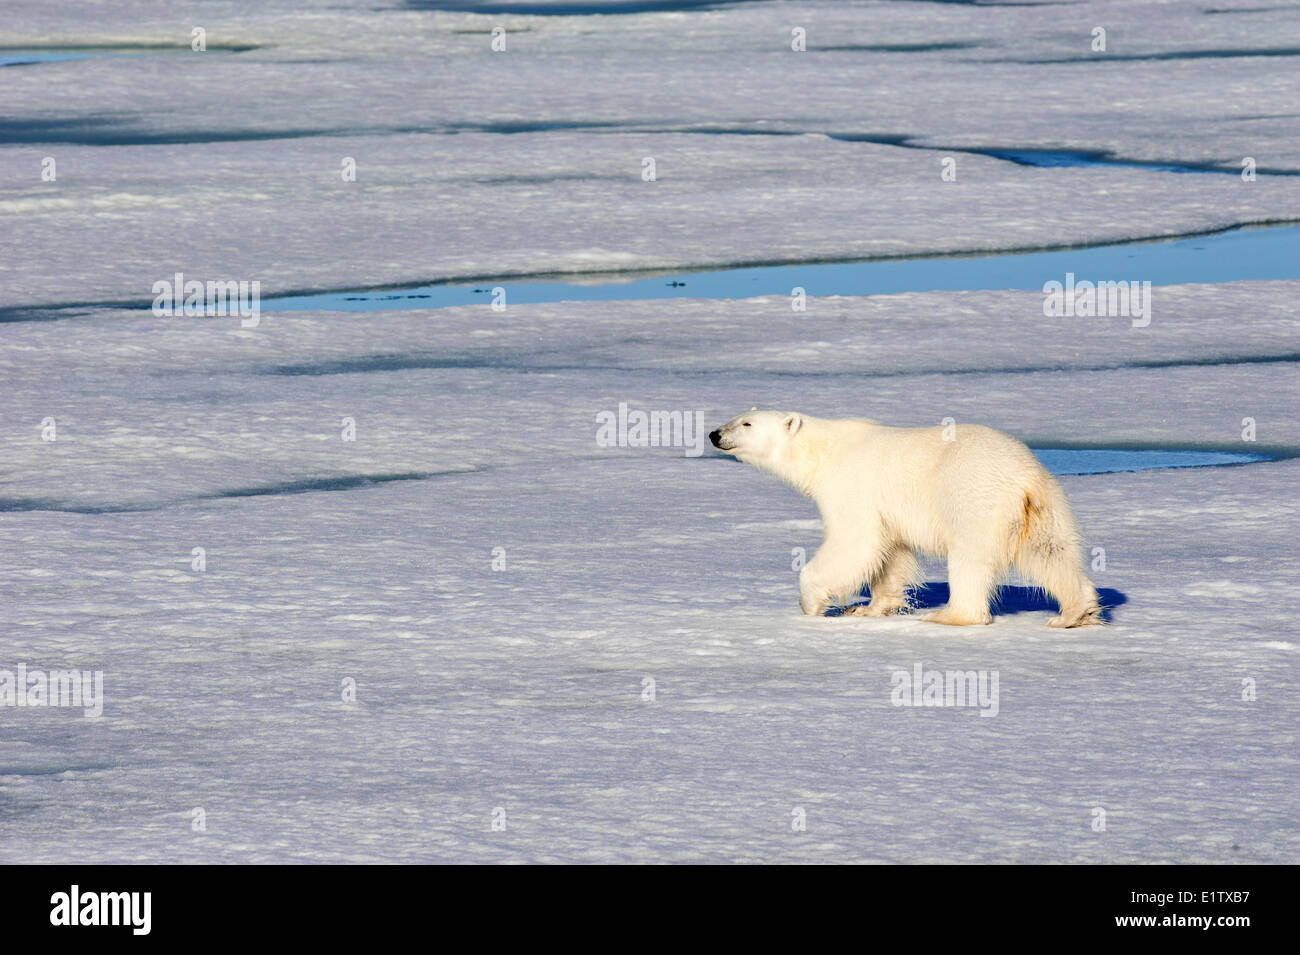 Orso polare (Ursus maritimus) sulla banchisa, arcipelago delle Svalbard, artico norvegese Foto Stock